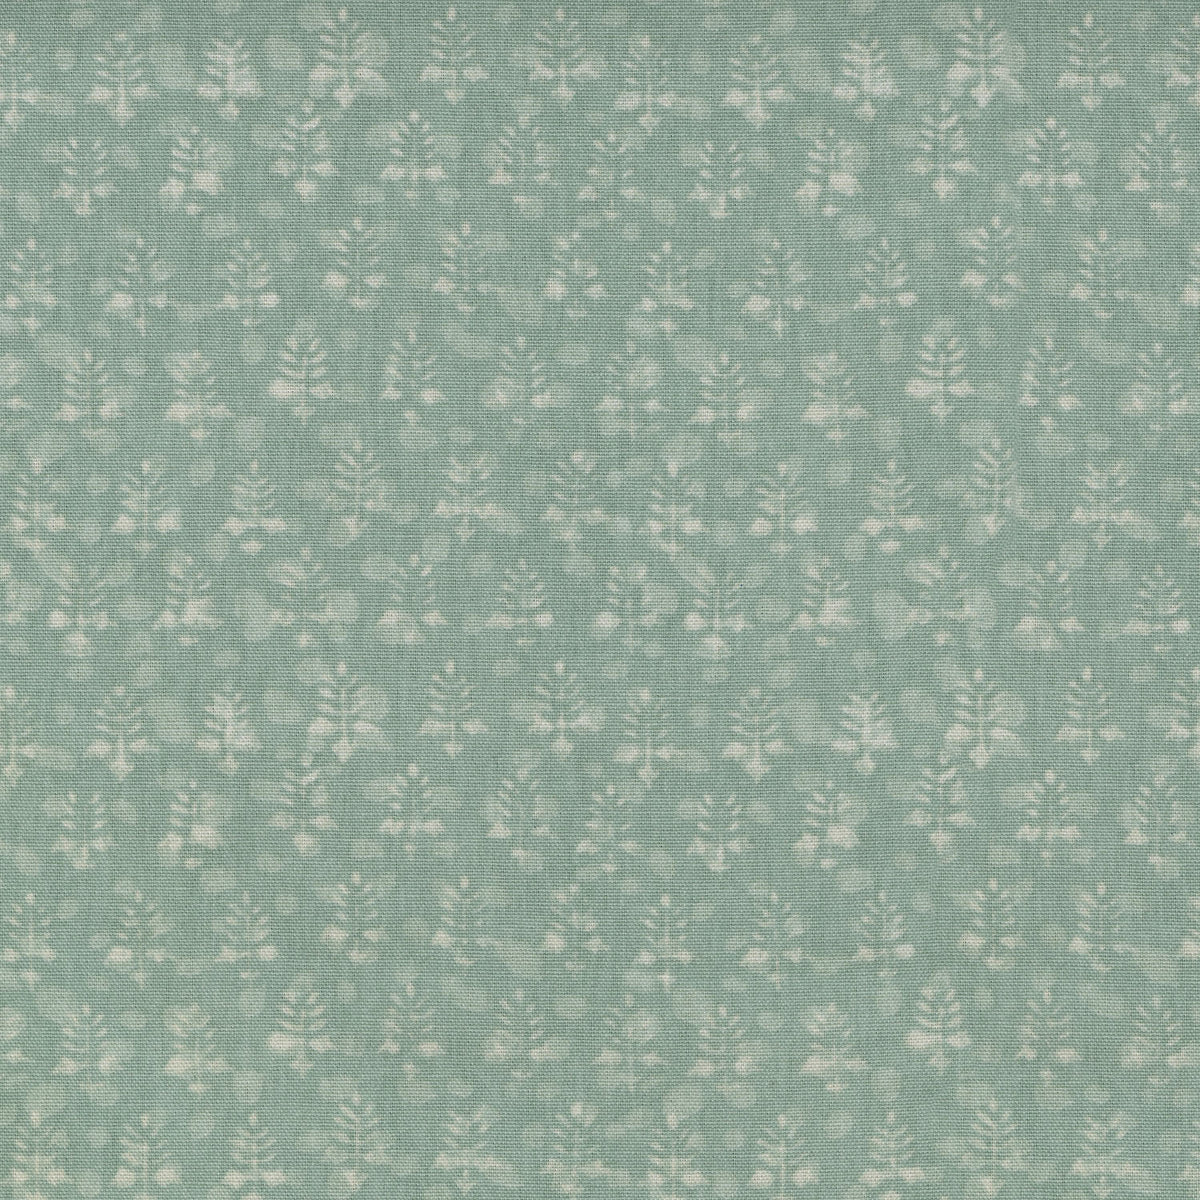 Waverly Twig Bandeau - Mist 682052 Fabric Swatch